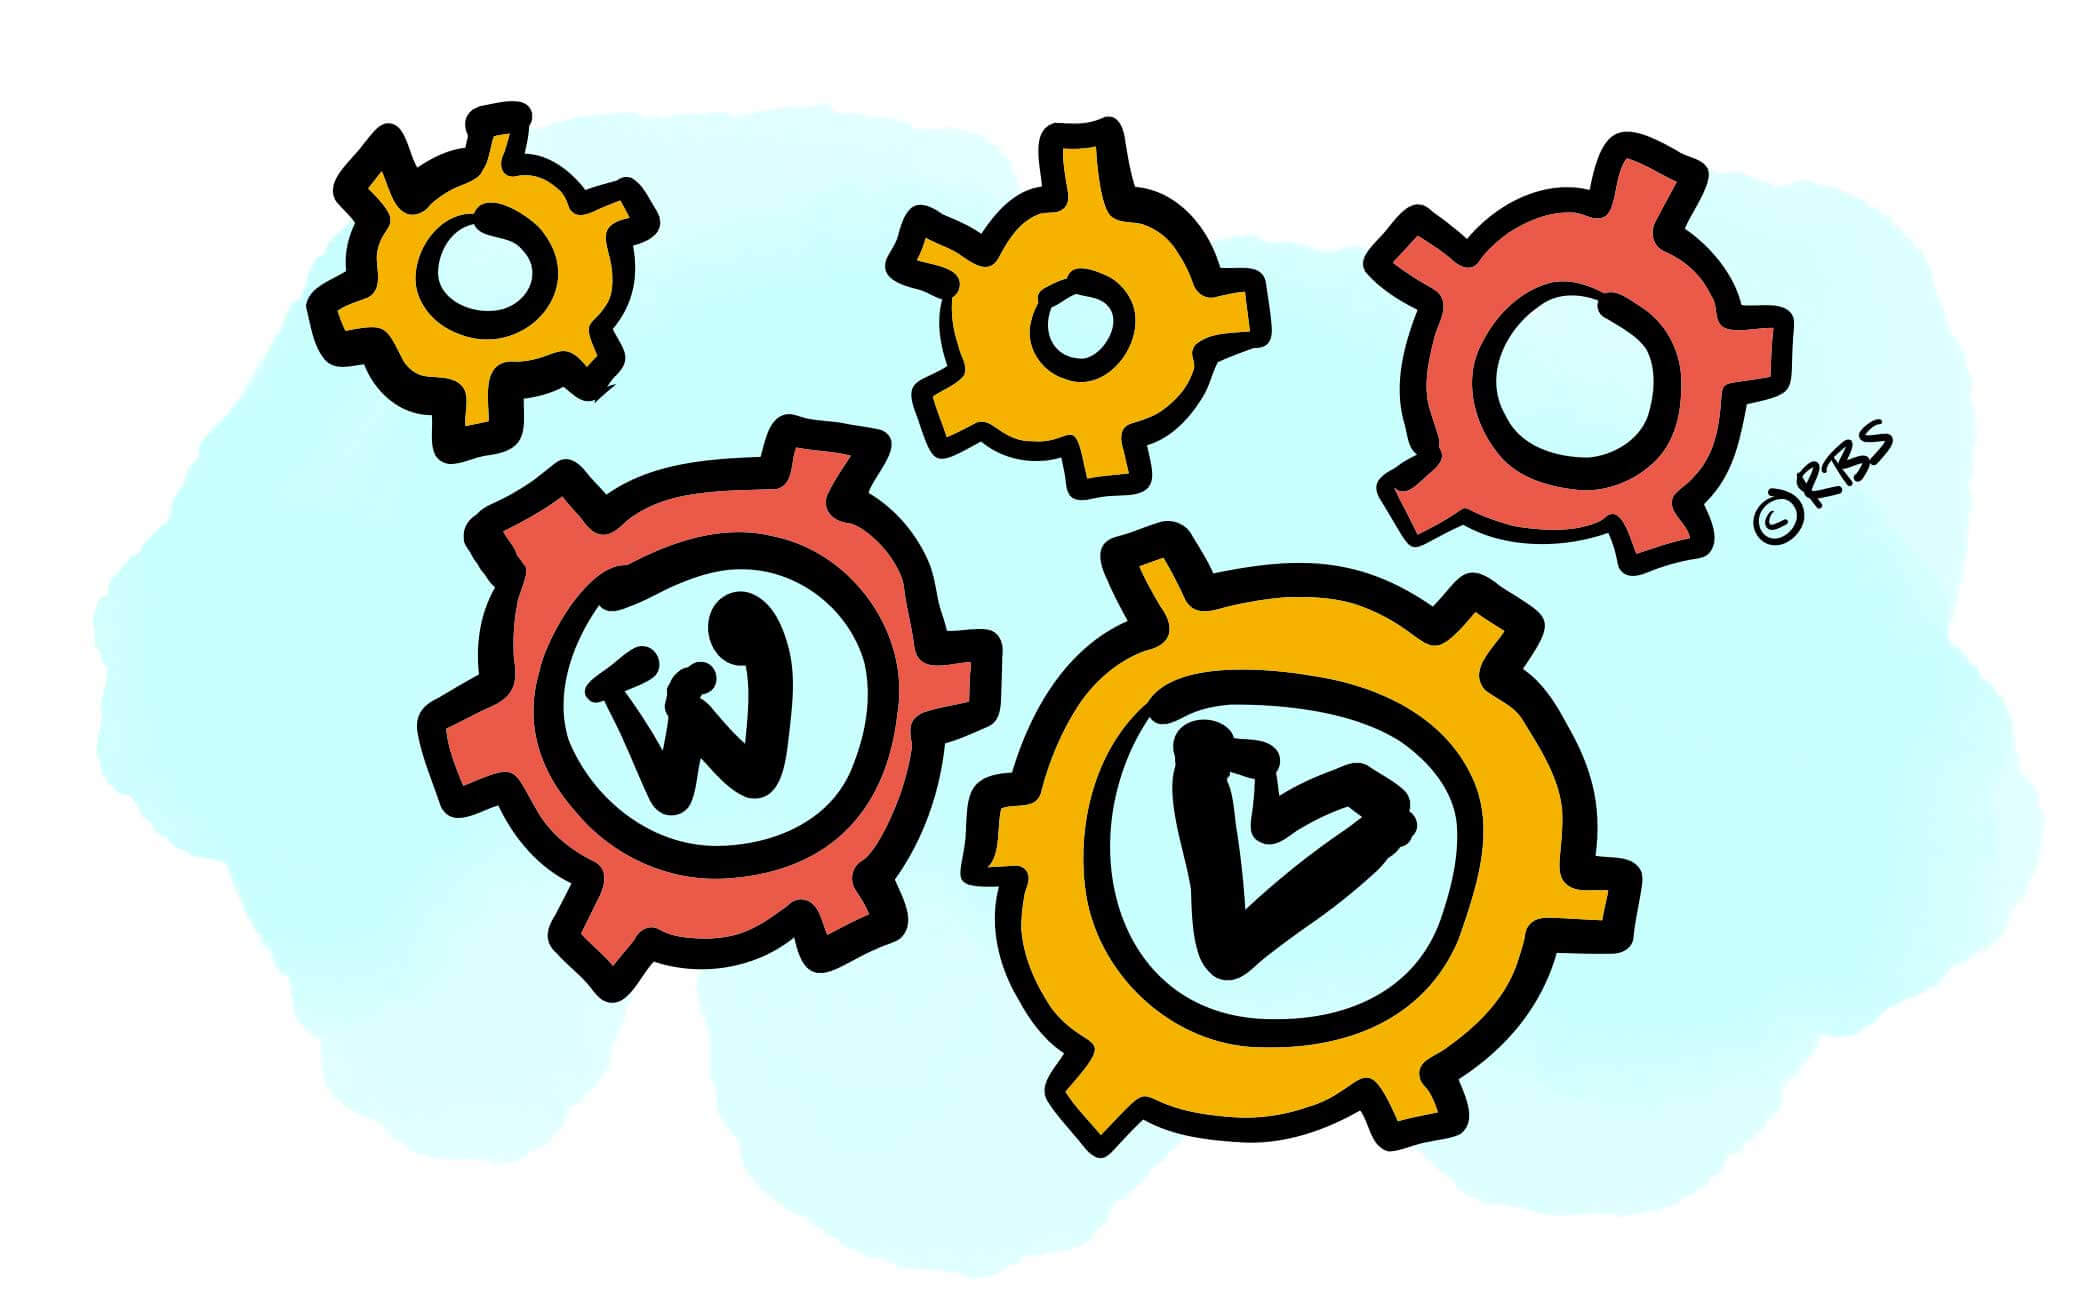 Illustratie van Wordpress en Vue logo met radertjes die in elkaar vallen.